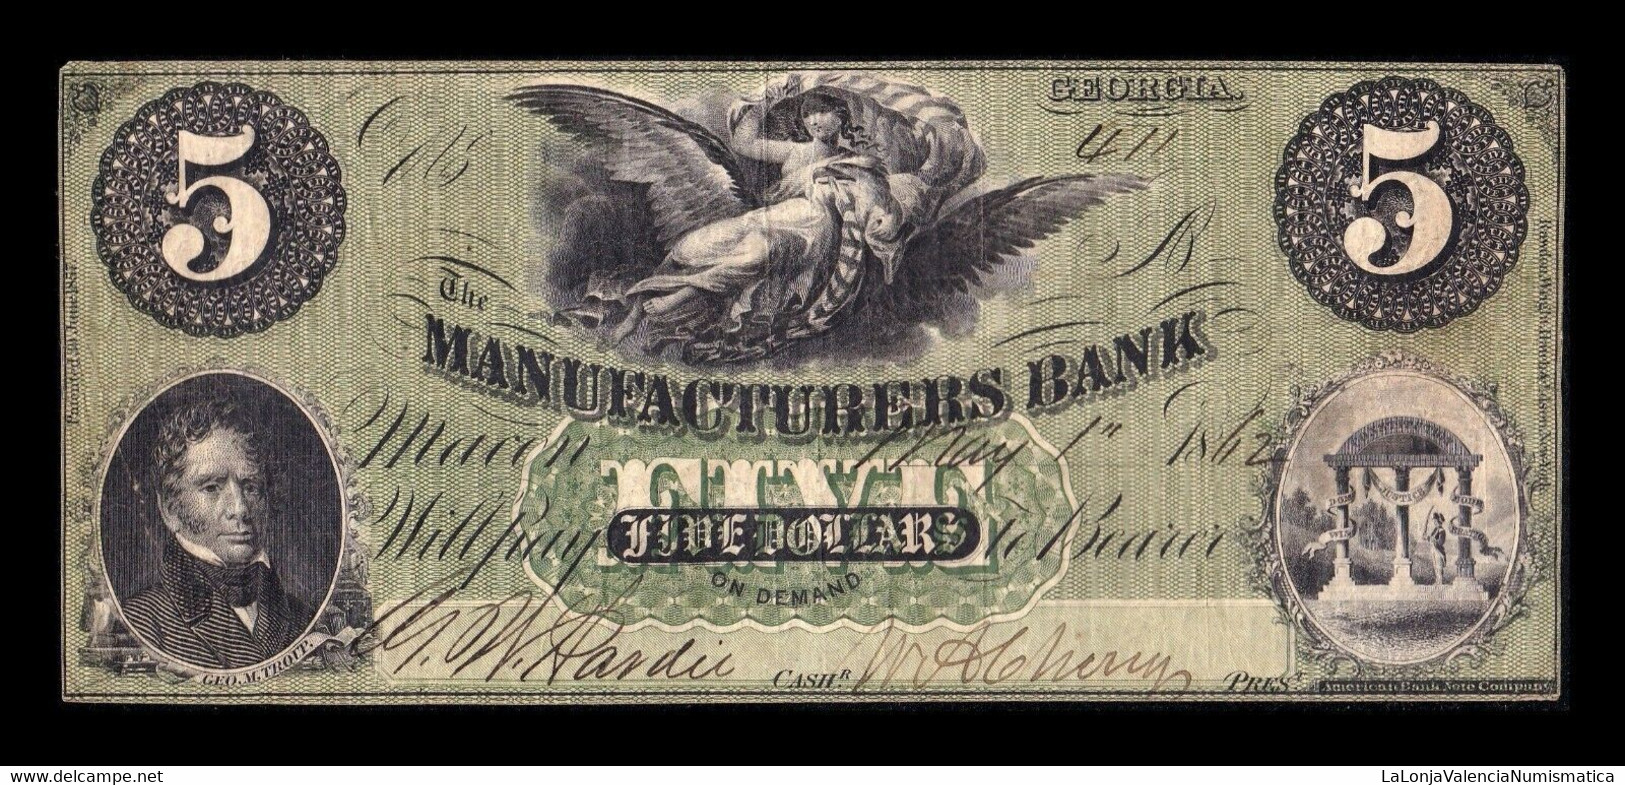 Estados Unidos United States 5 Dollars 1862 Manufacturers Bank Georgia MBC - AVF - Confederate (1861-1864)